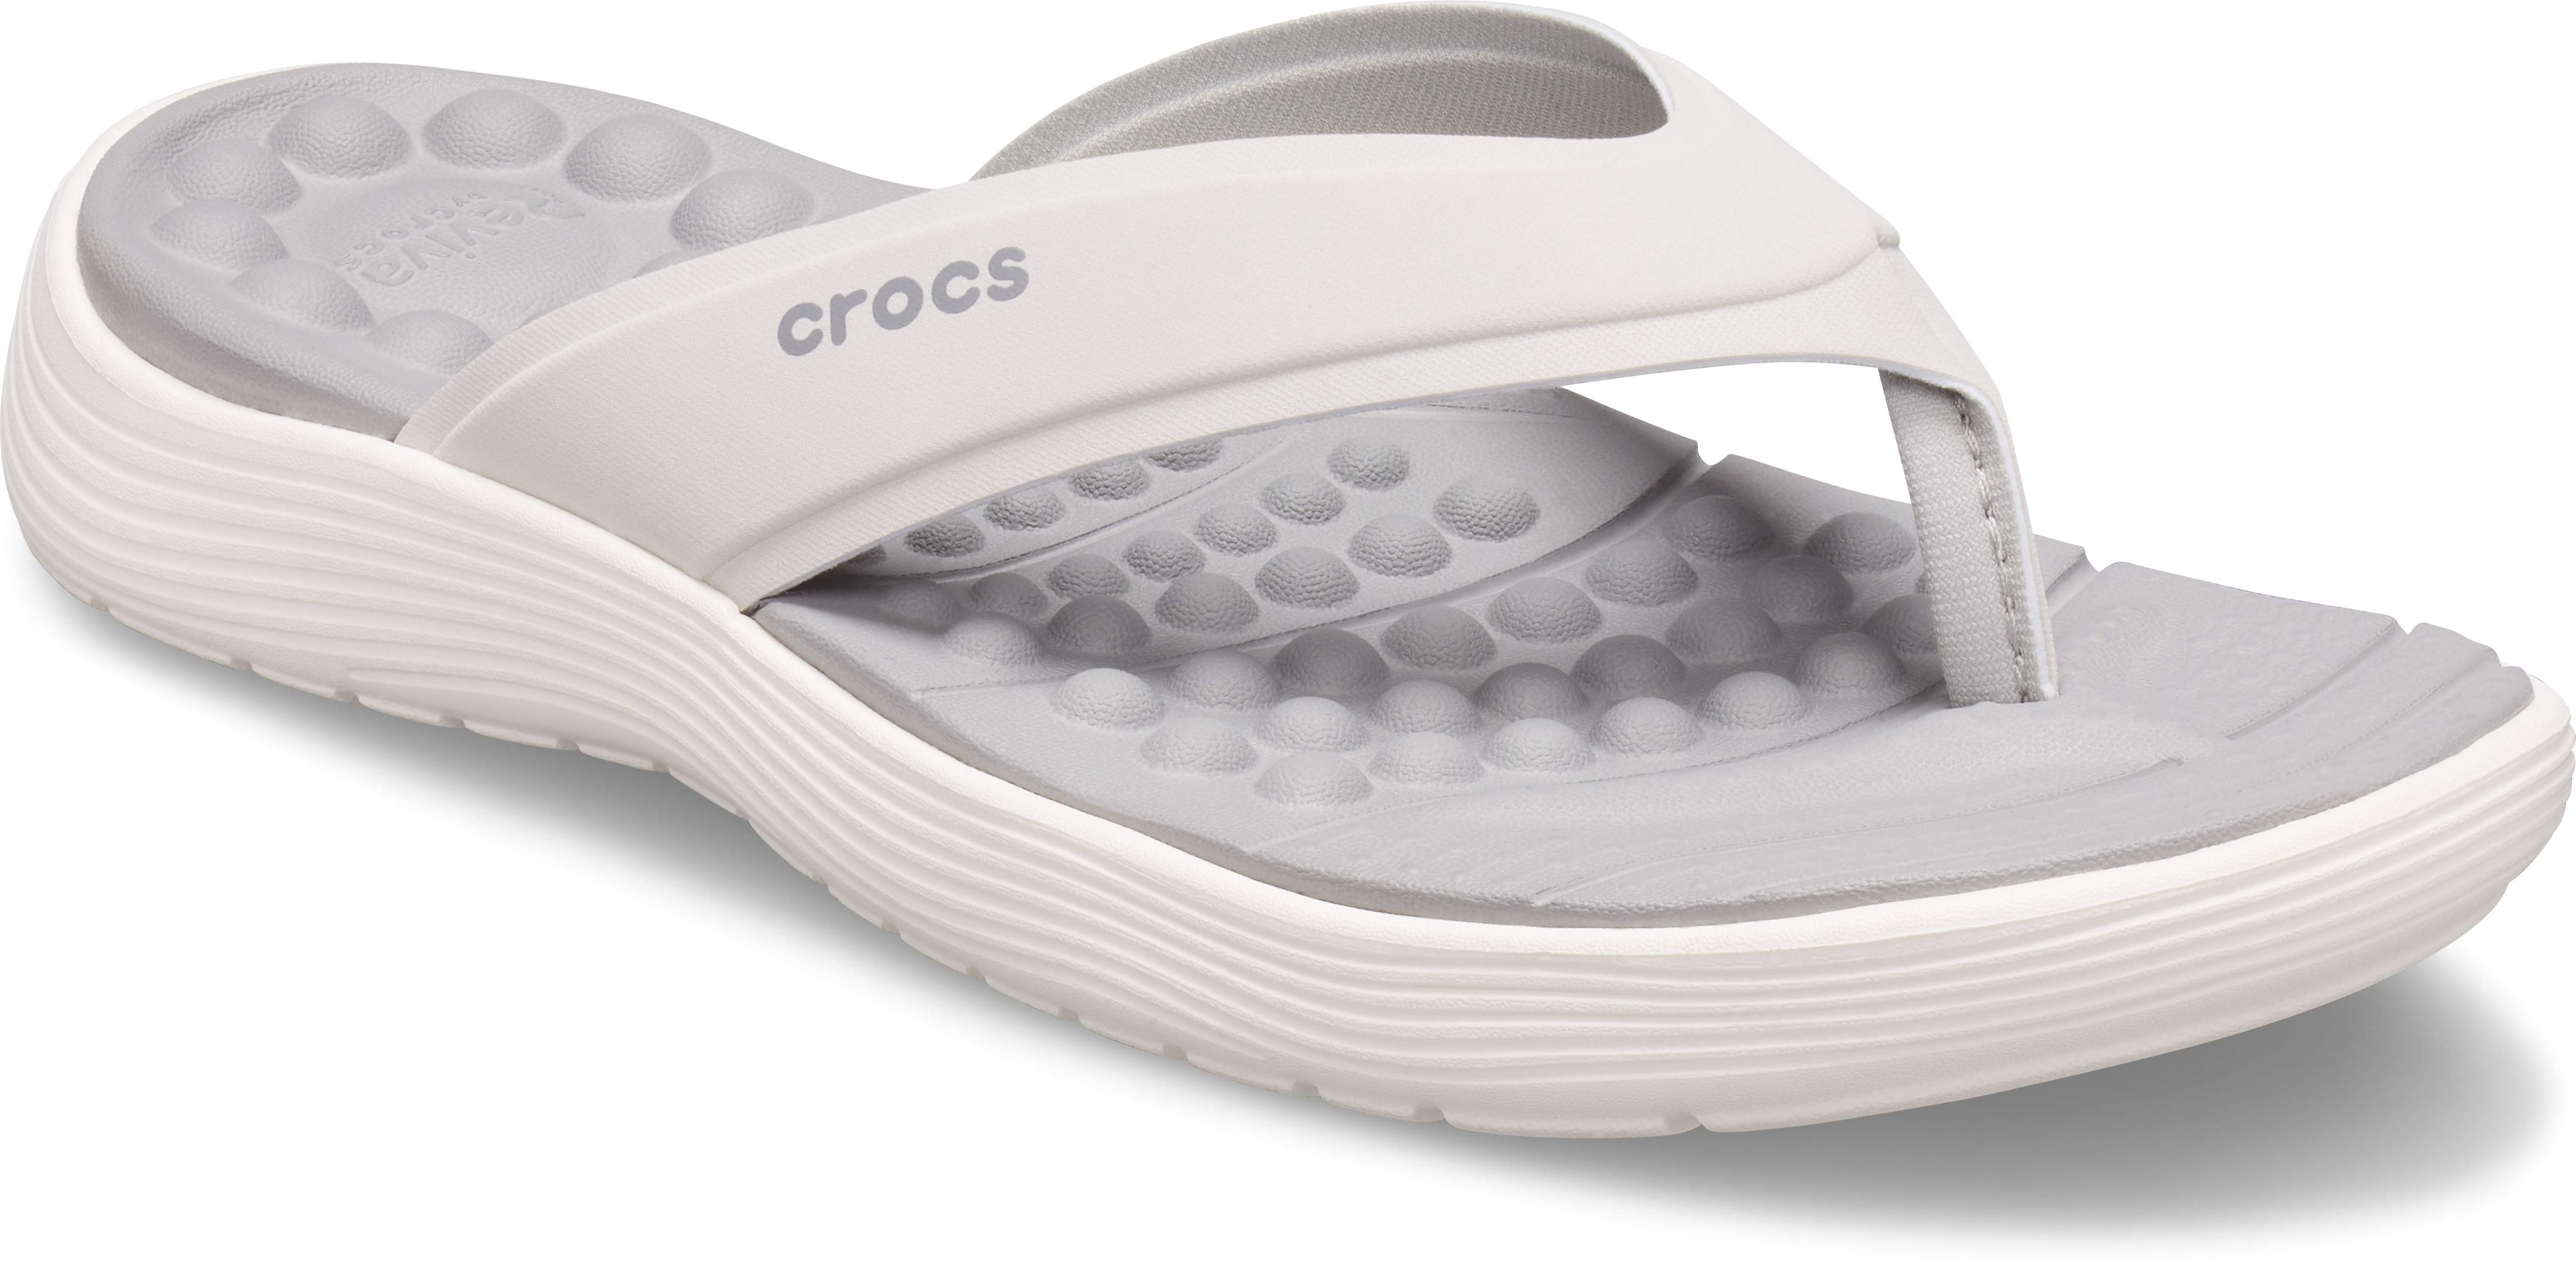 reviva crocs review